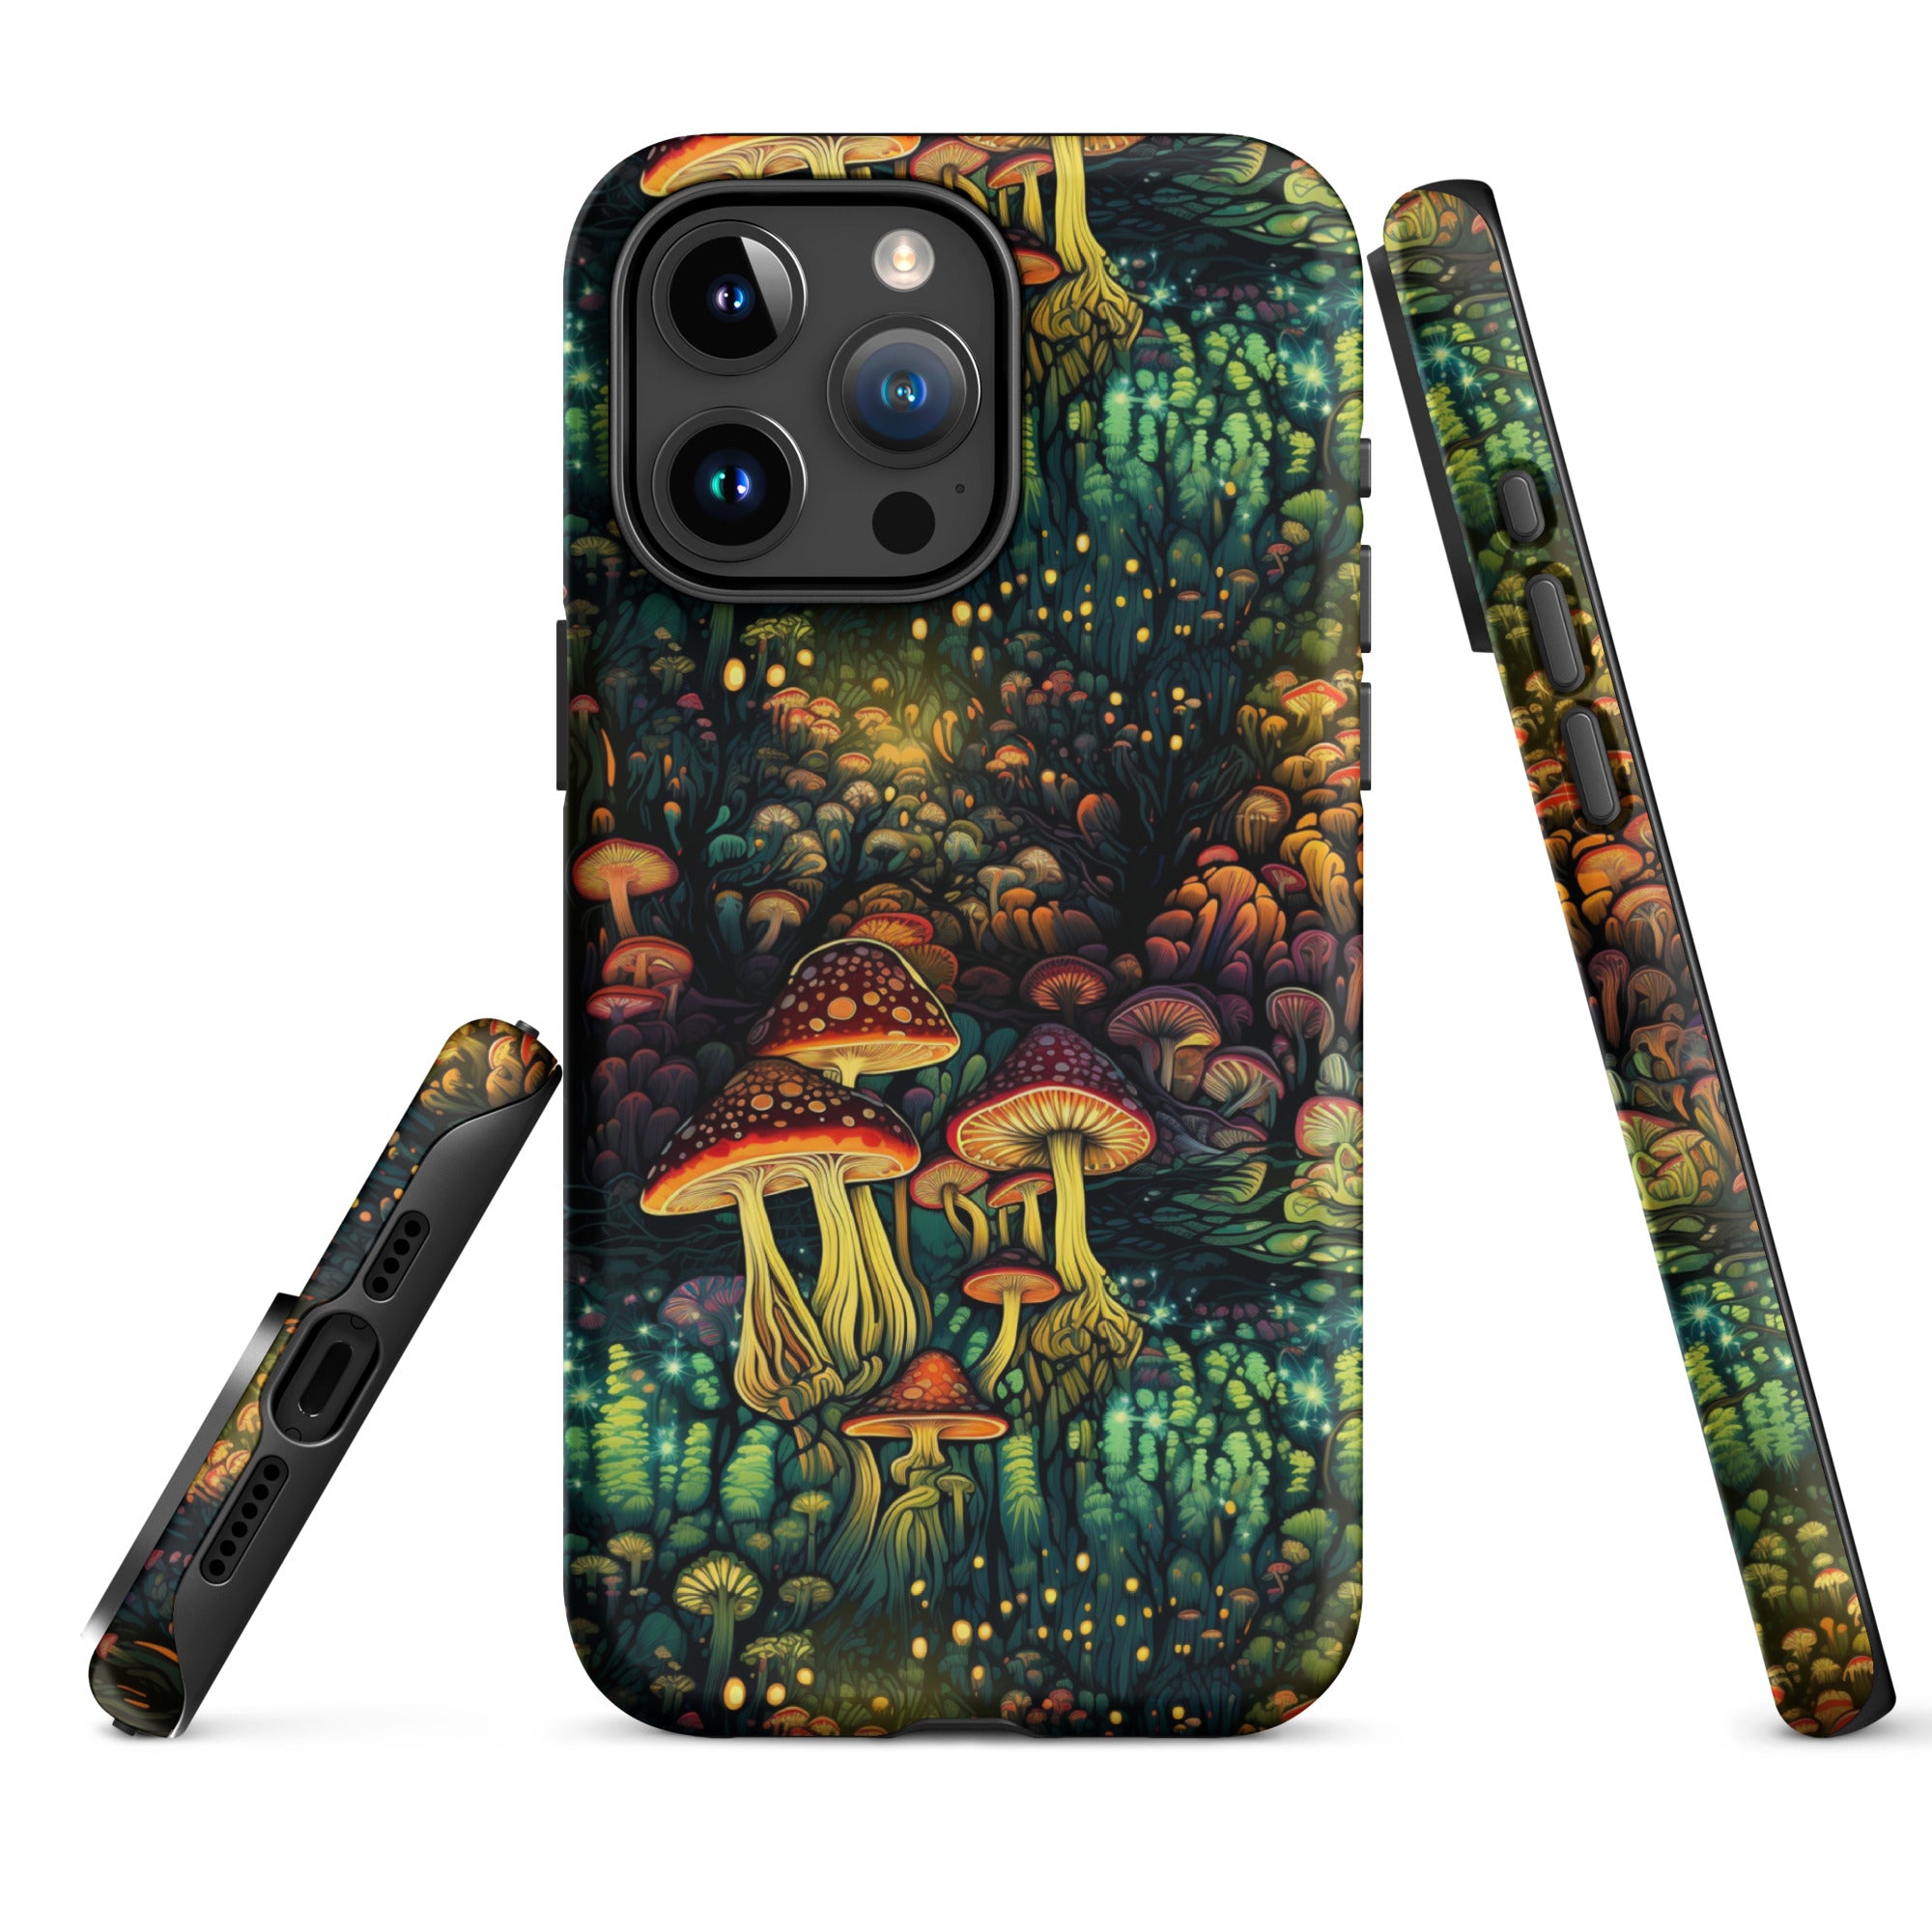 Neon Hallucinations - An Illuminated Autumn Spectacle - iPhone Case